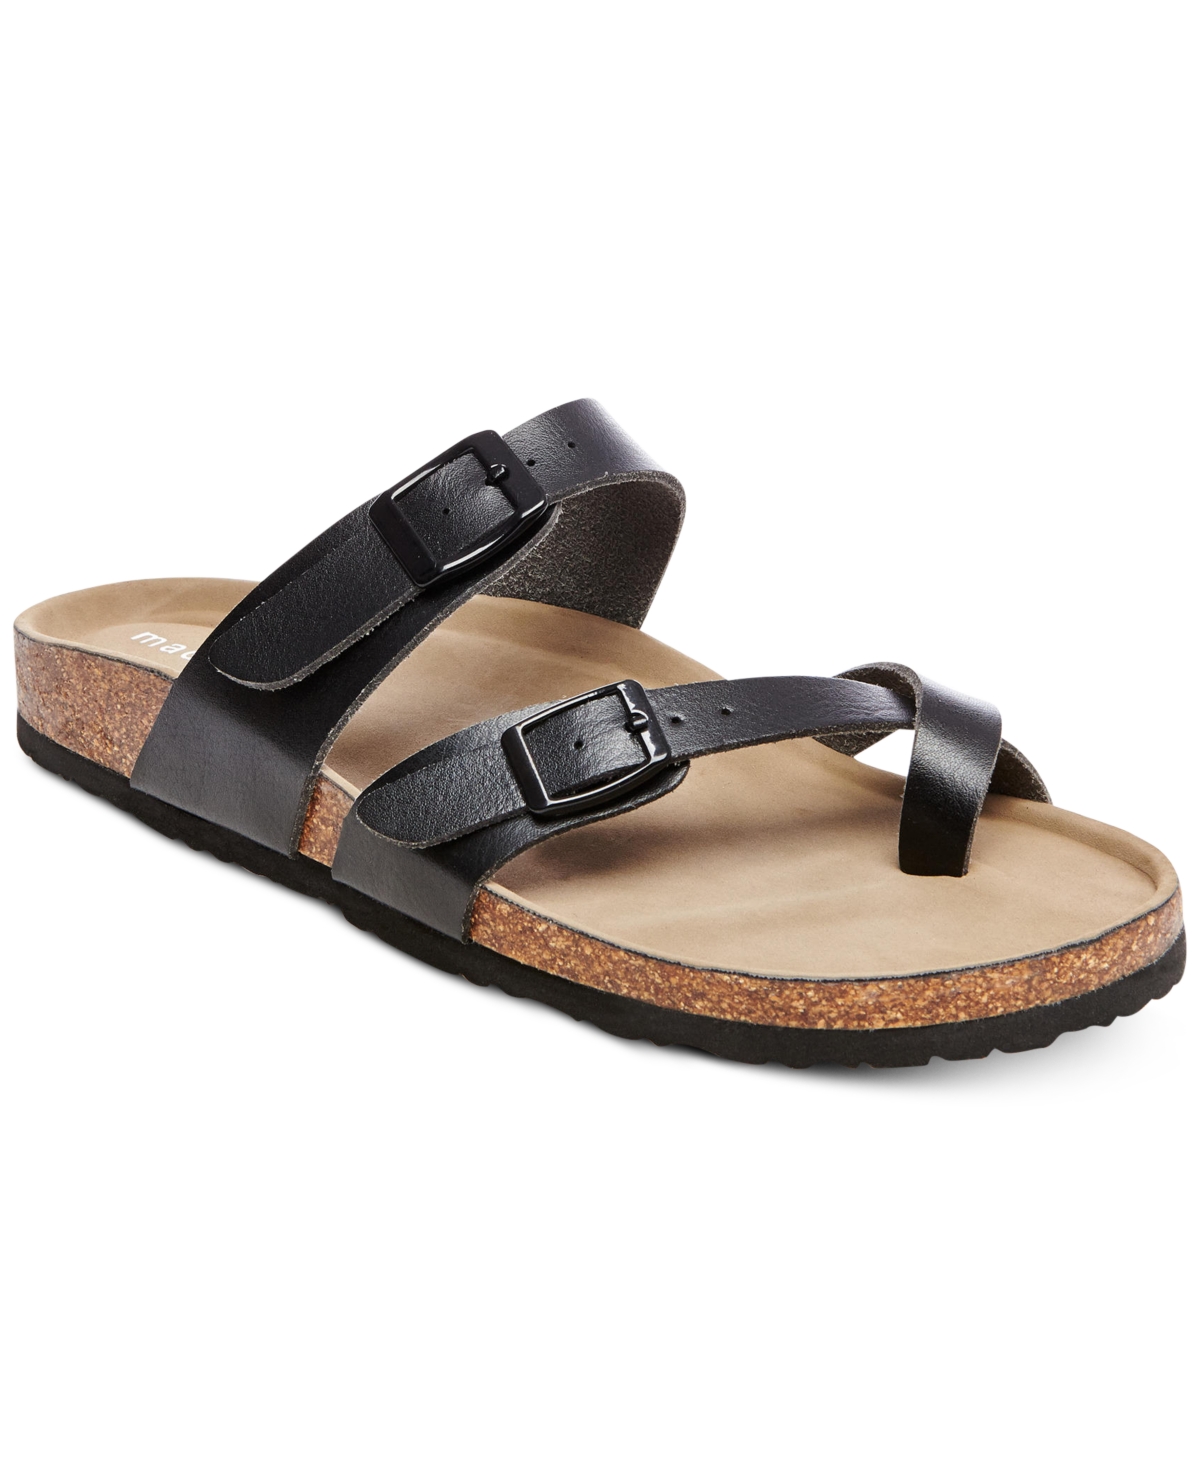 Bryceee Footbed Sandals - Dark Brown